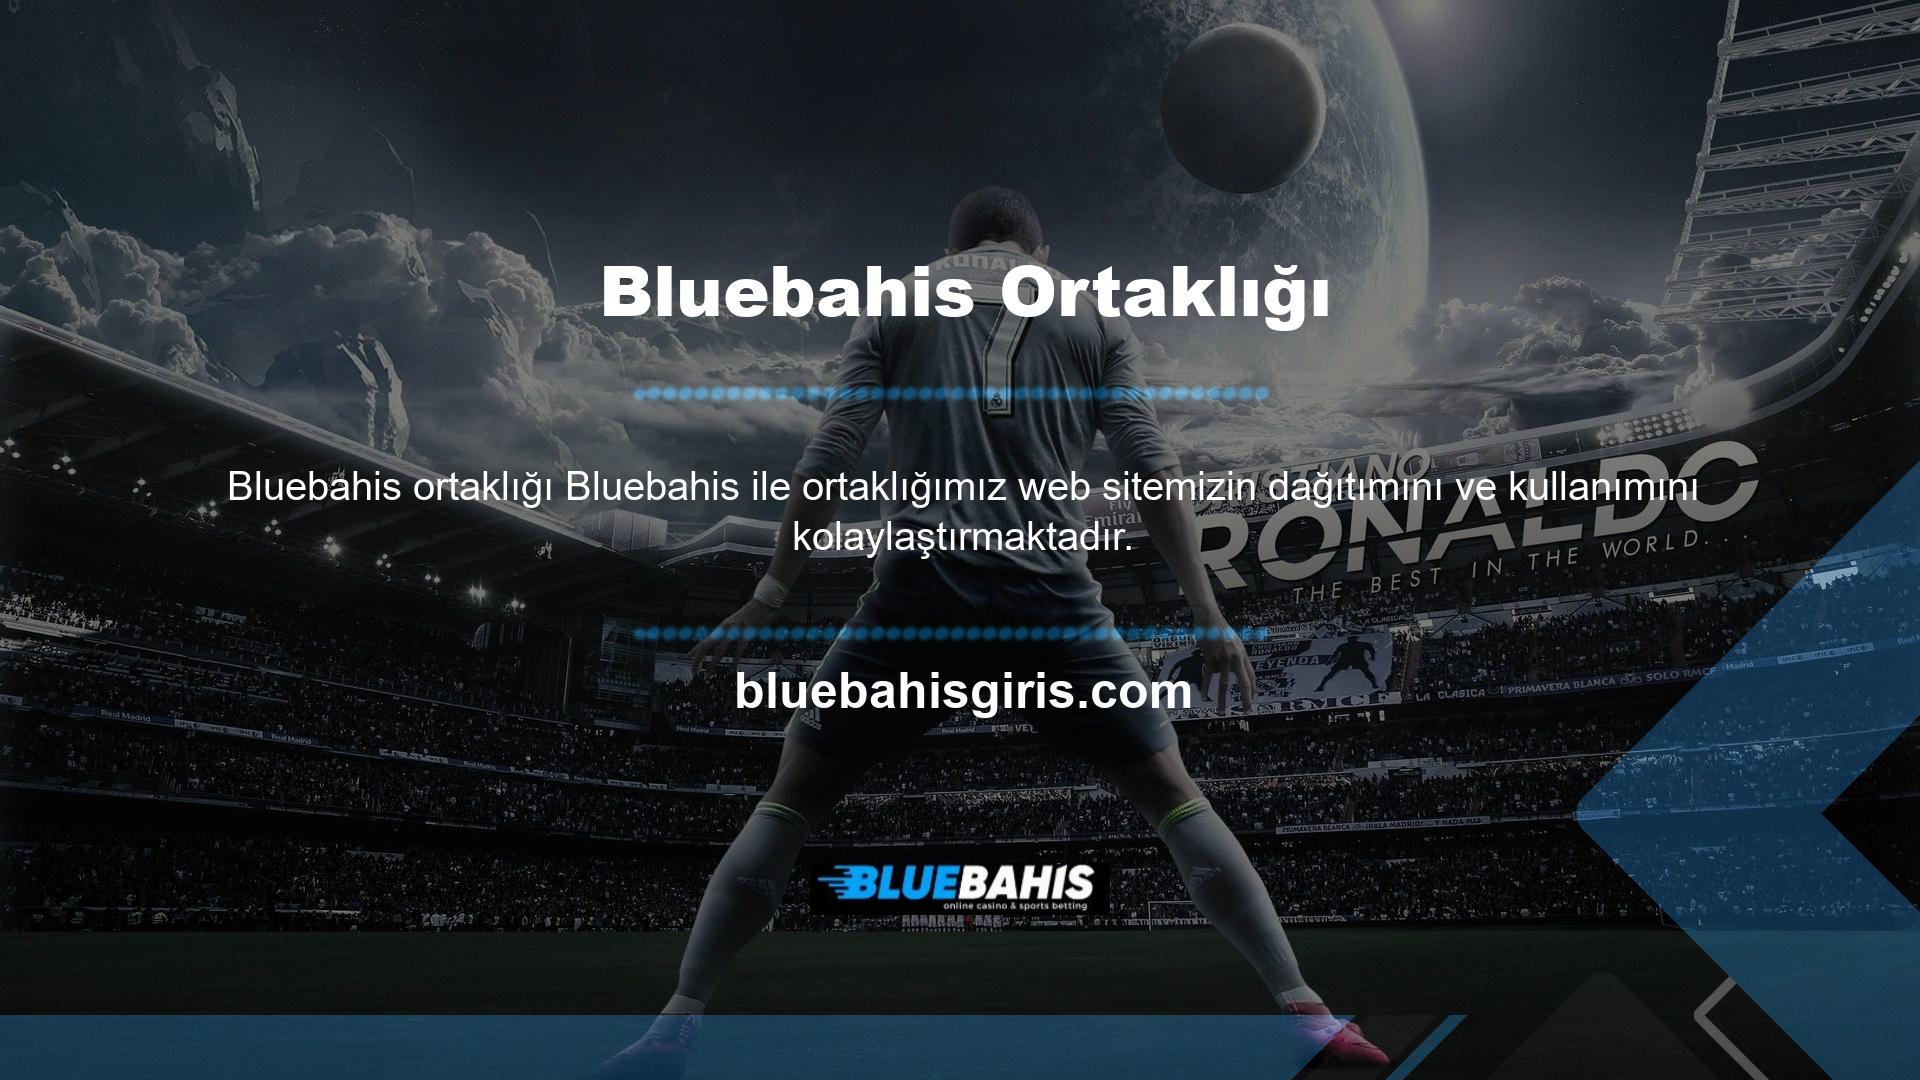 Genel olarak, Bluebahis ile işbirliği yapmak isteyen herkesin web sitesini detaylı platformda tanıtması gerekmektedir